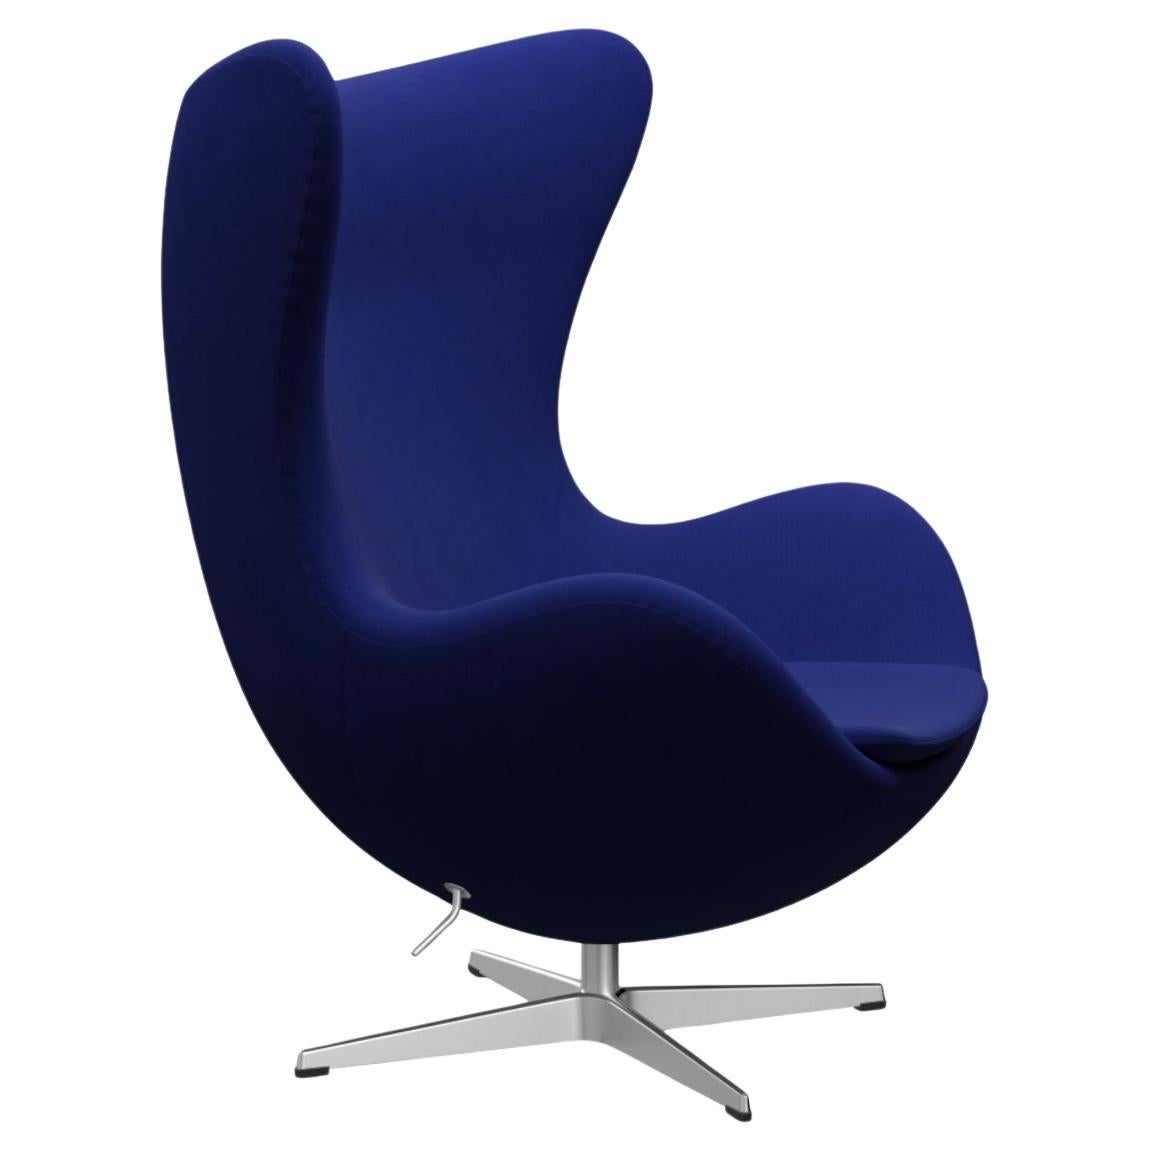 The Egg chair by Arne Jacobsen for Fritz Hansen, Blue, Denmark (La chaise Egg d'Arne Jacobsen pour Fritz Hansen, bleue, Danemark)